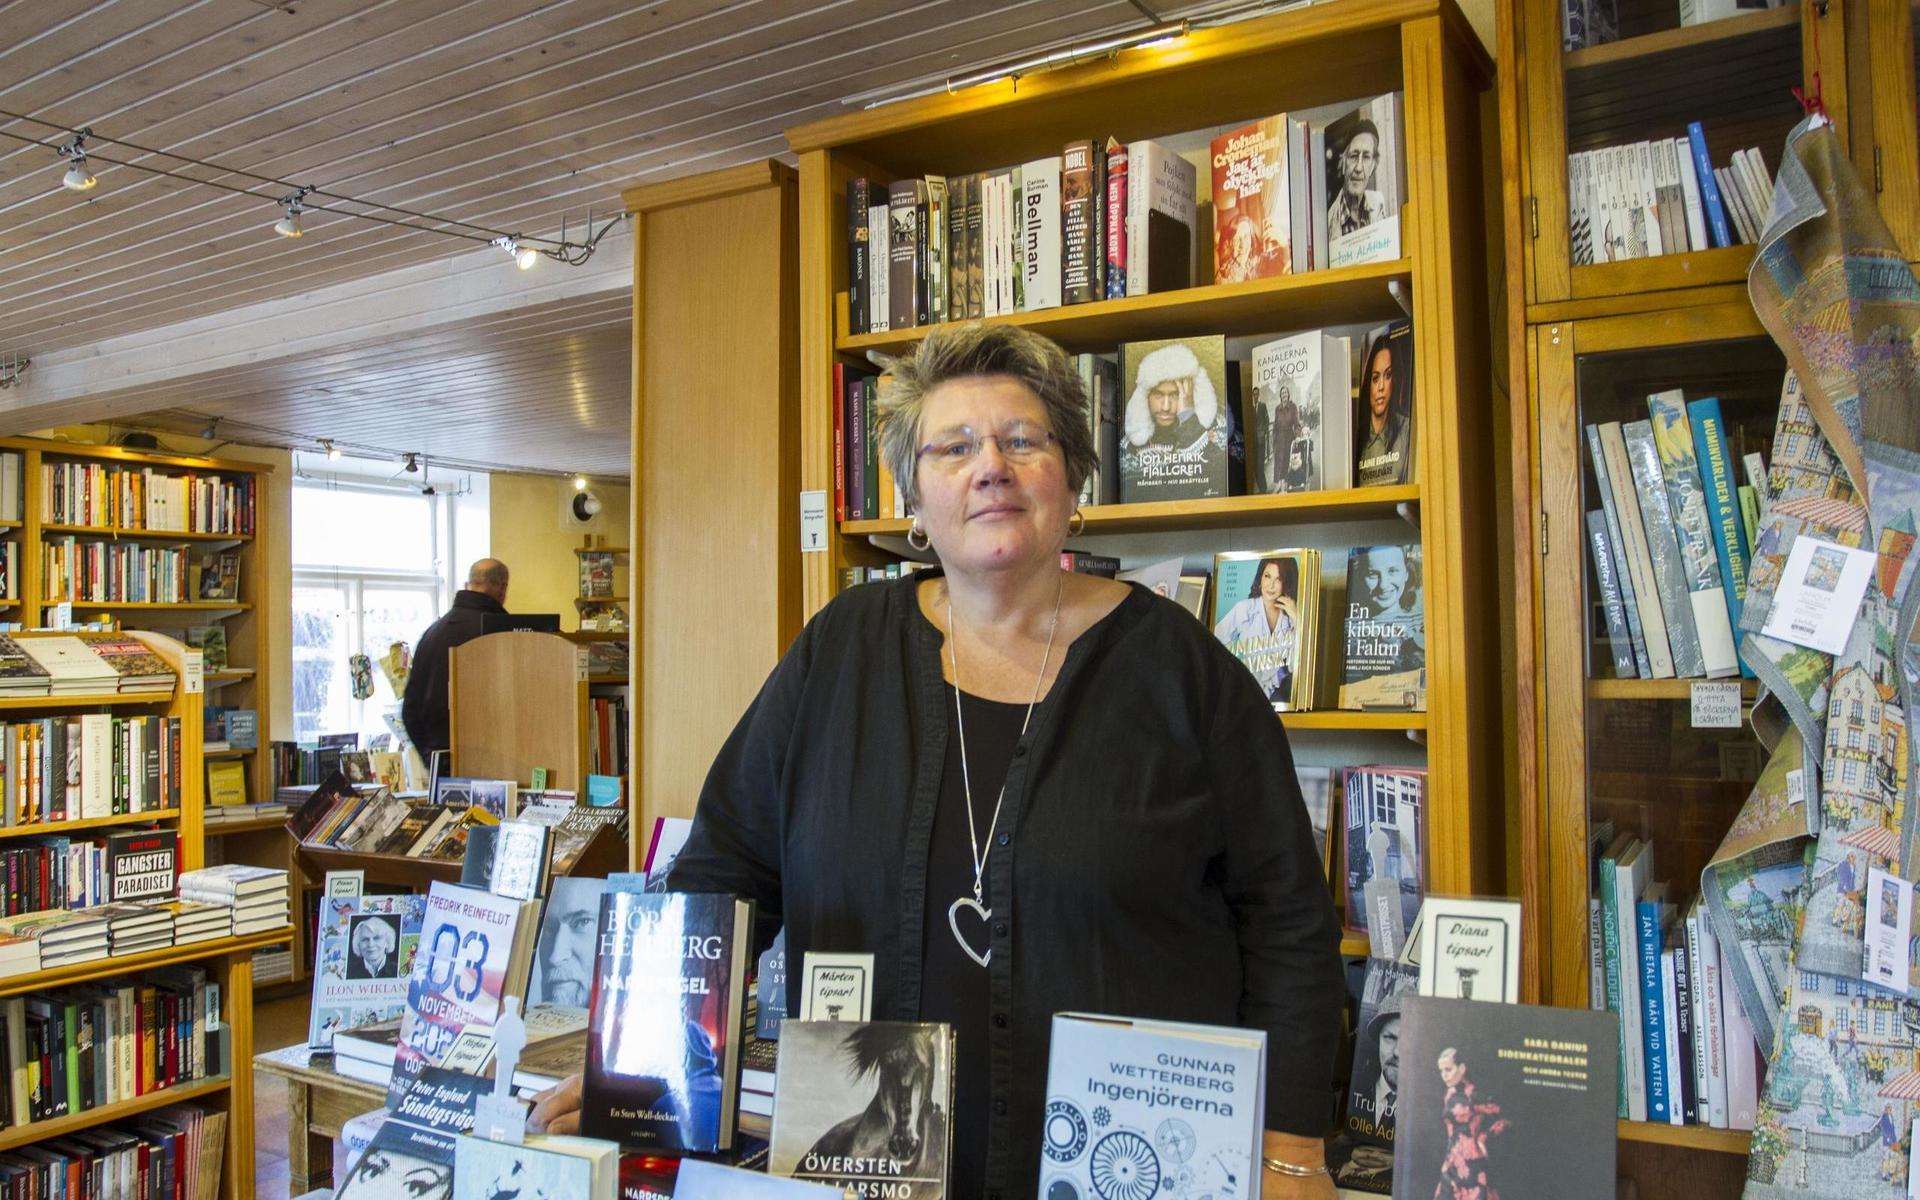 Diana Lavesson är bekymrad över läget, men bokhandeln överväger att ha öppet på söndagar för att kunder ska kunna handla julklappar på ett tryggt sätt. Via sitt nyhetsbrev har de påmint om att de gör hemleveranser.